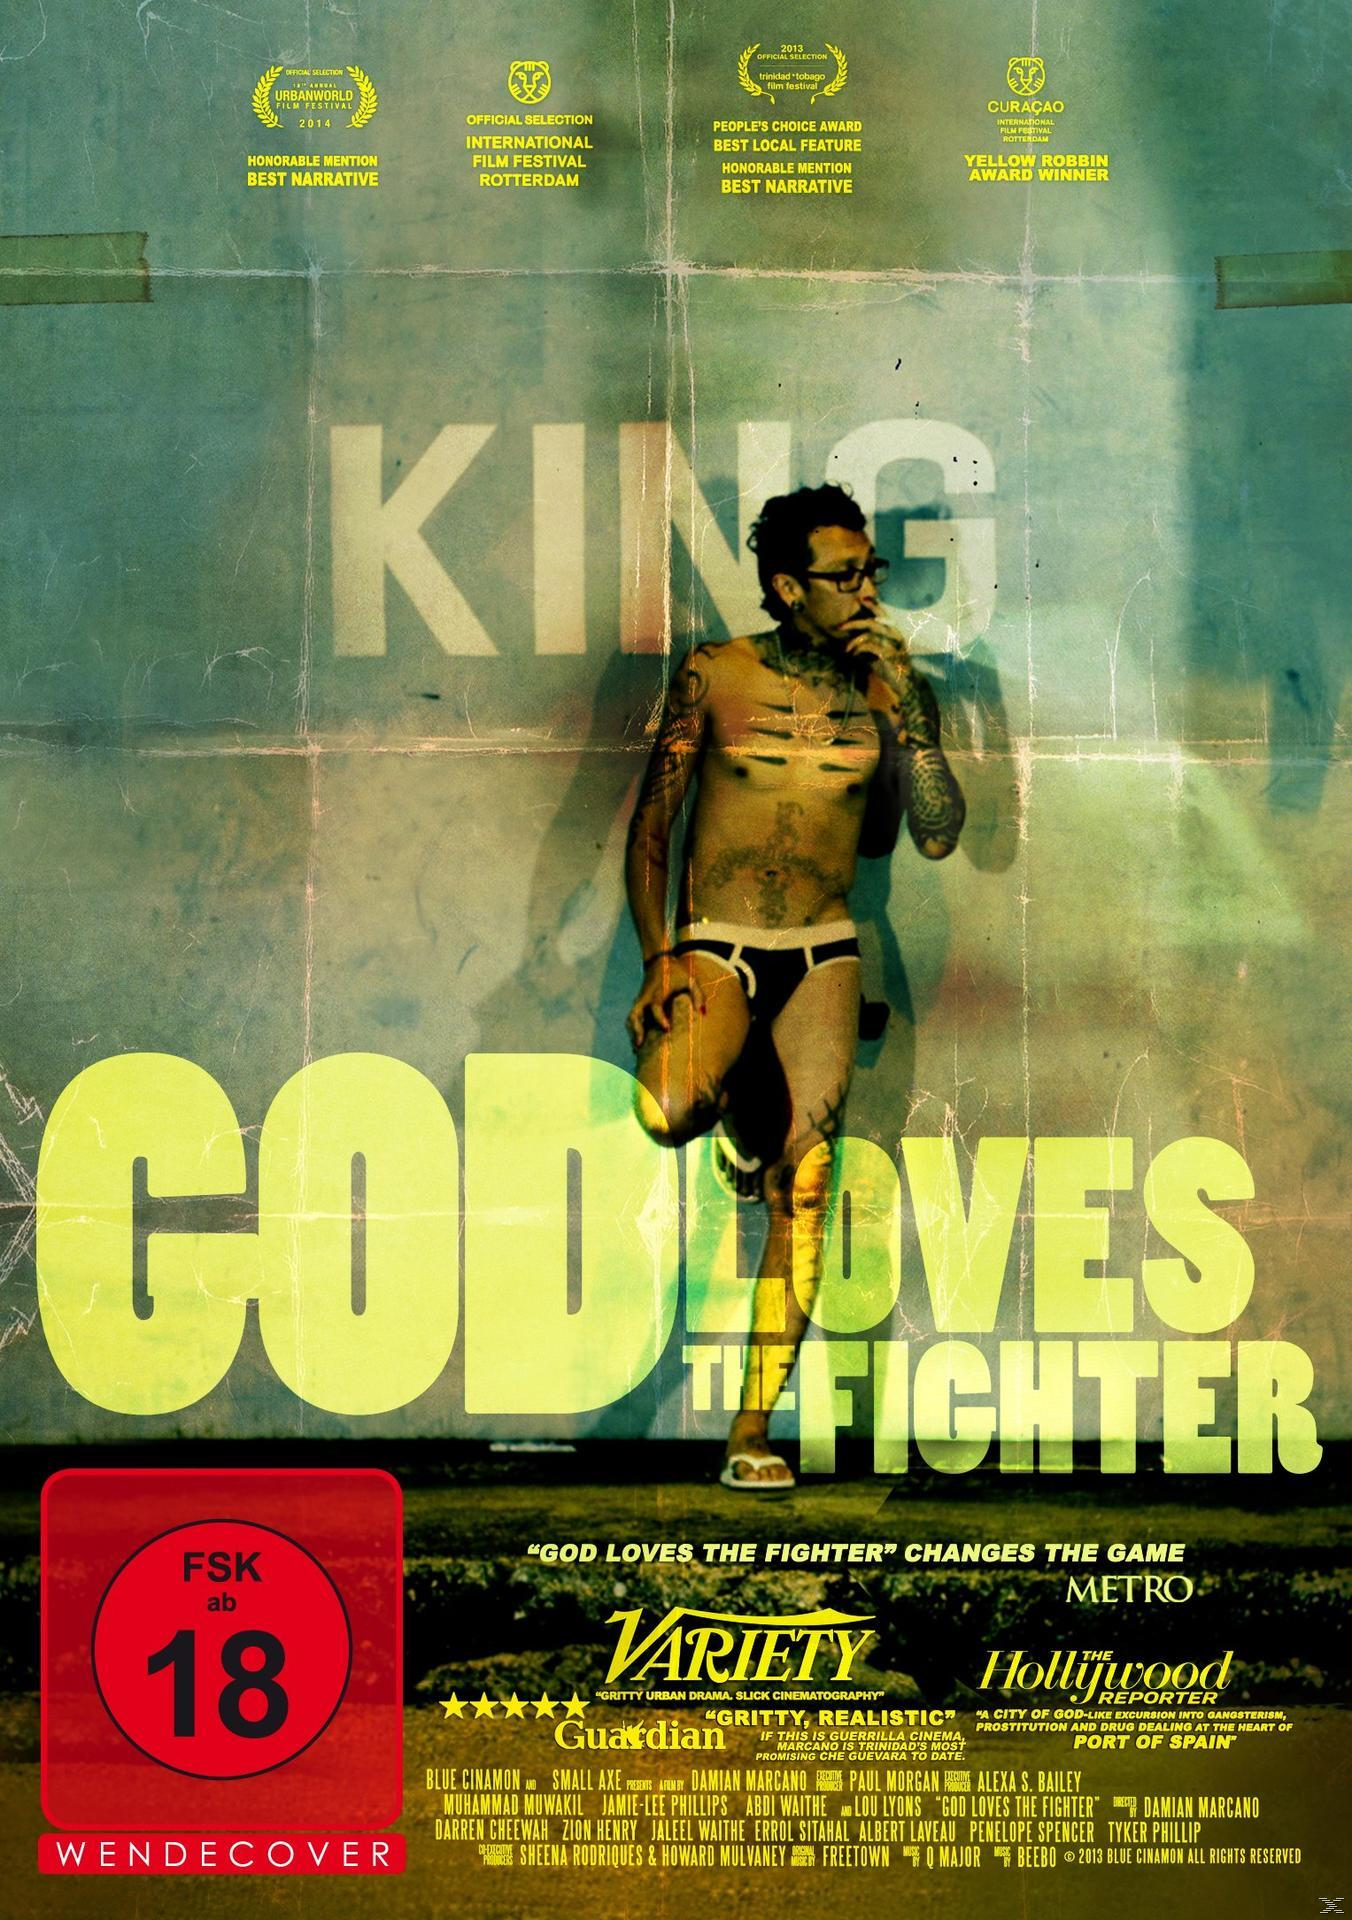 Fighter DVD Loves God the